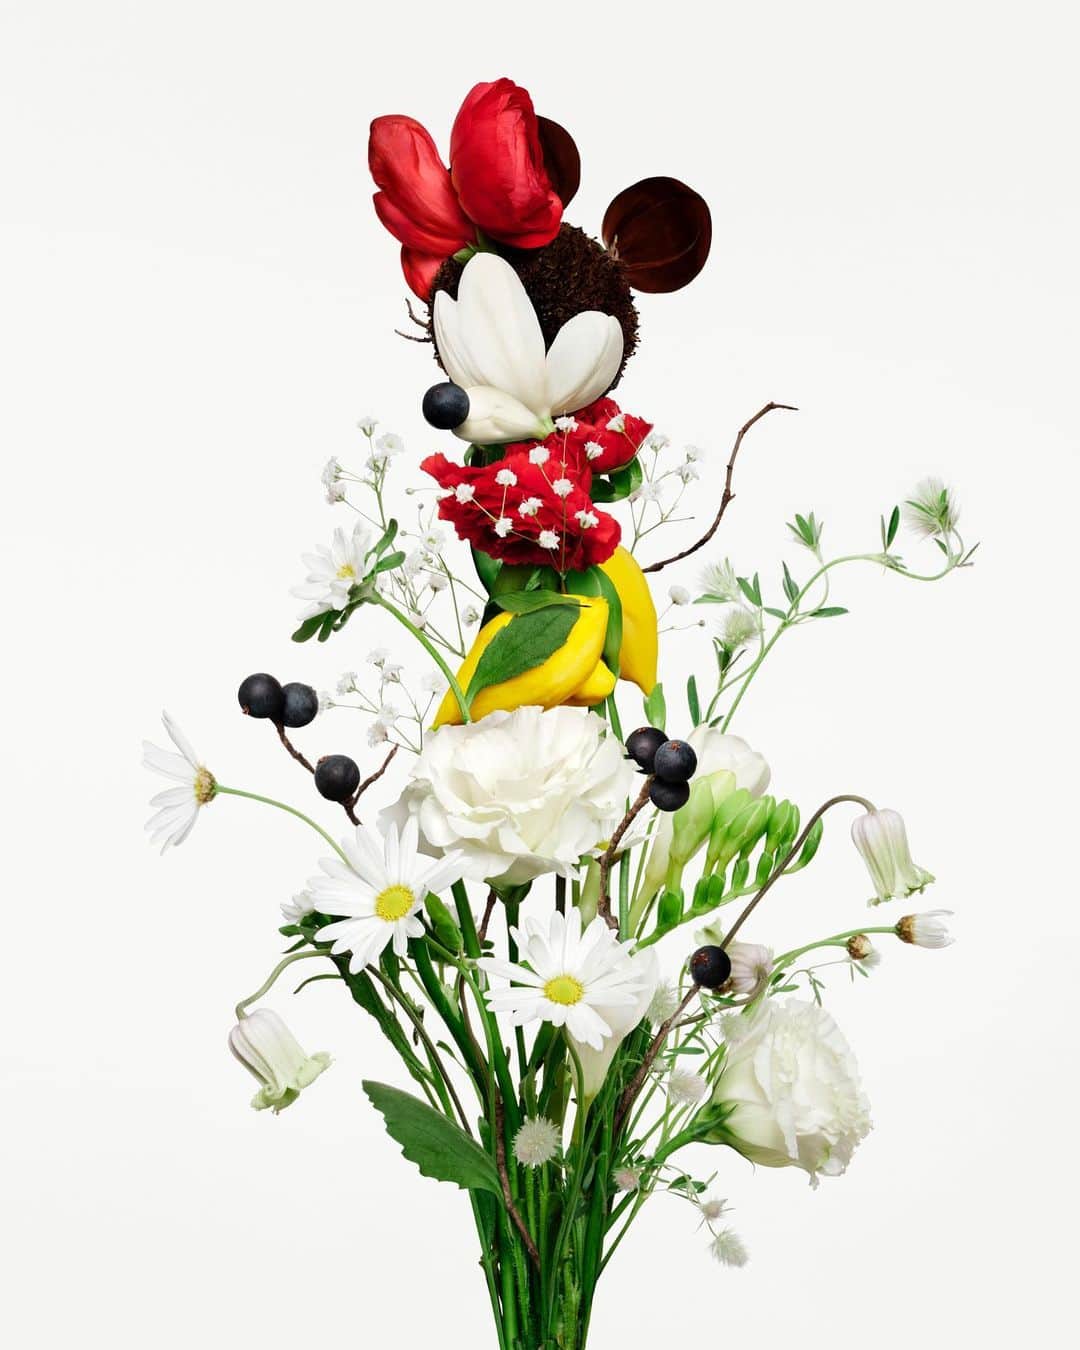 吉田ユニのインスタグラム：「ウォルト・ディズニー・カンパニー100周年のプロジェクト「Disney Create 100」に参加させていただいています。お祝いの気持ちを込めて花束でMickey MouseとMinnie Mouseをつくりました。 I'm participating in the Walt Disney Company 100th anniversary project "Disney Create 100". I made Mickey Mouse and Minnie Mouse out of a bouquet to celebrate them.  @DISNEYSTYLE  @makeawishintl  #DisneyCreate100 #Disney100 #ディズニー100 #flower #bouquet  #mickeymouse  #minniemouse #anniversary」